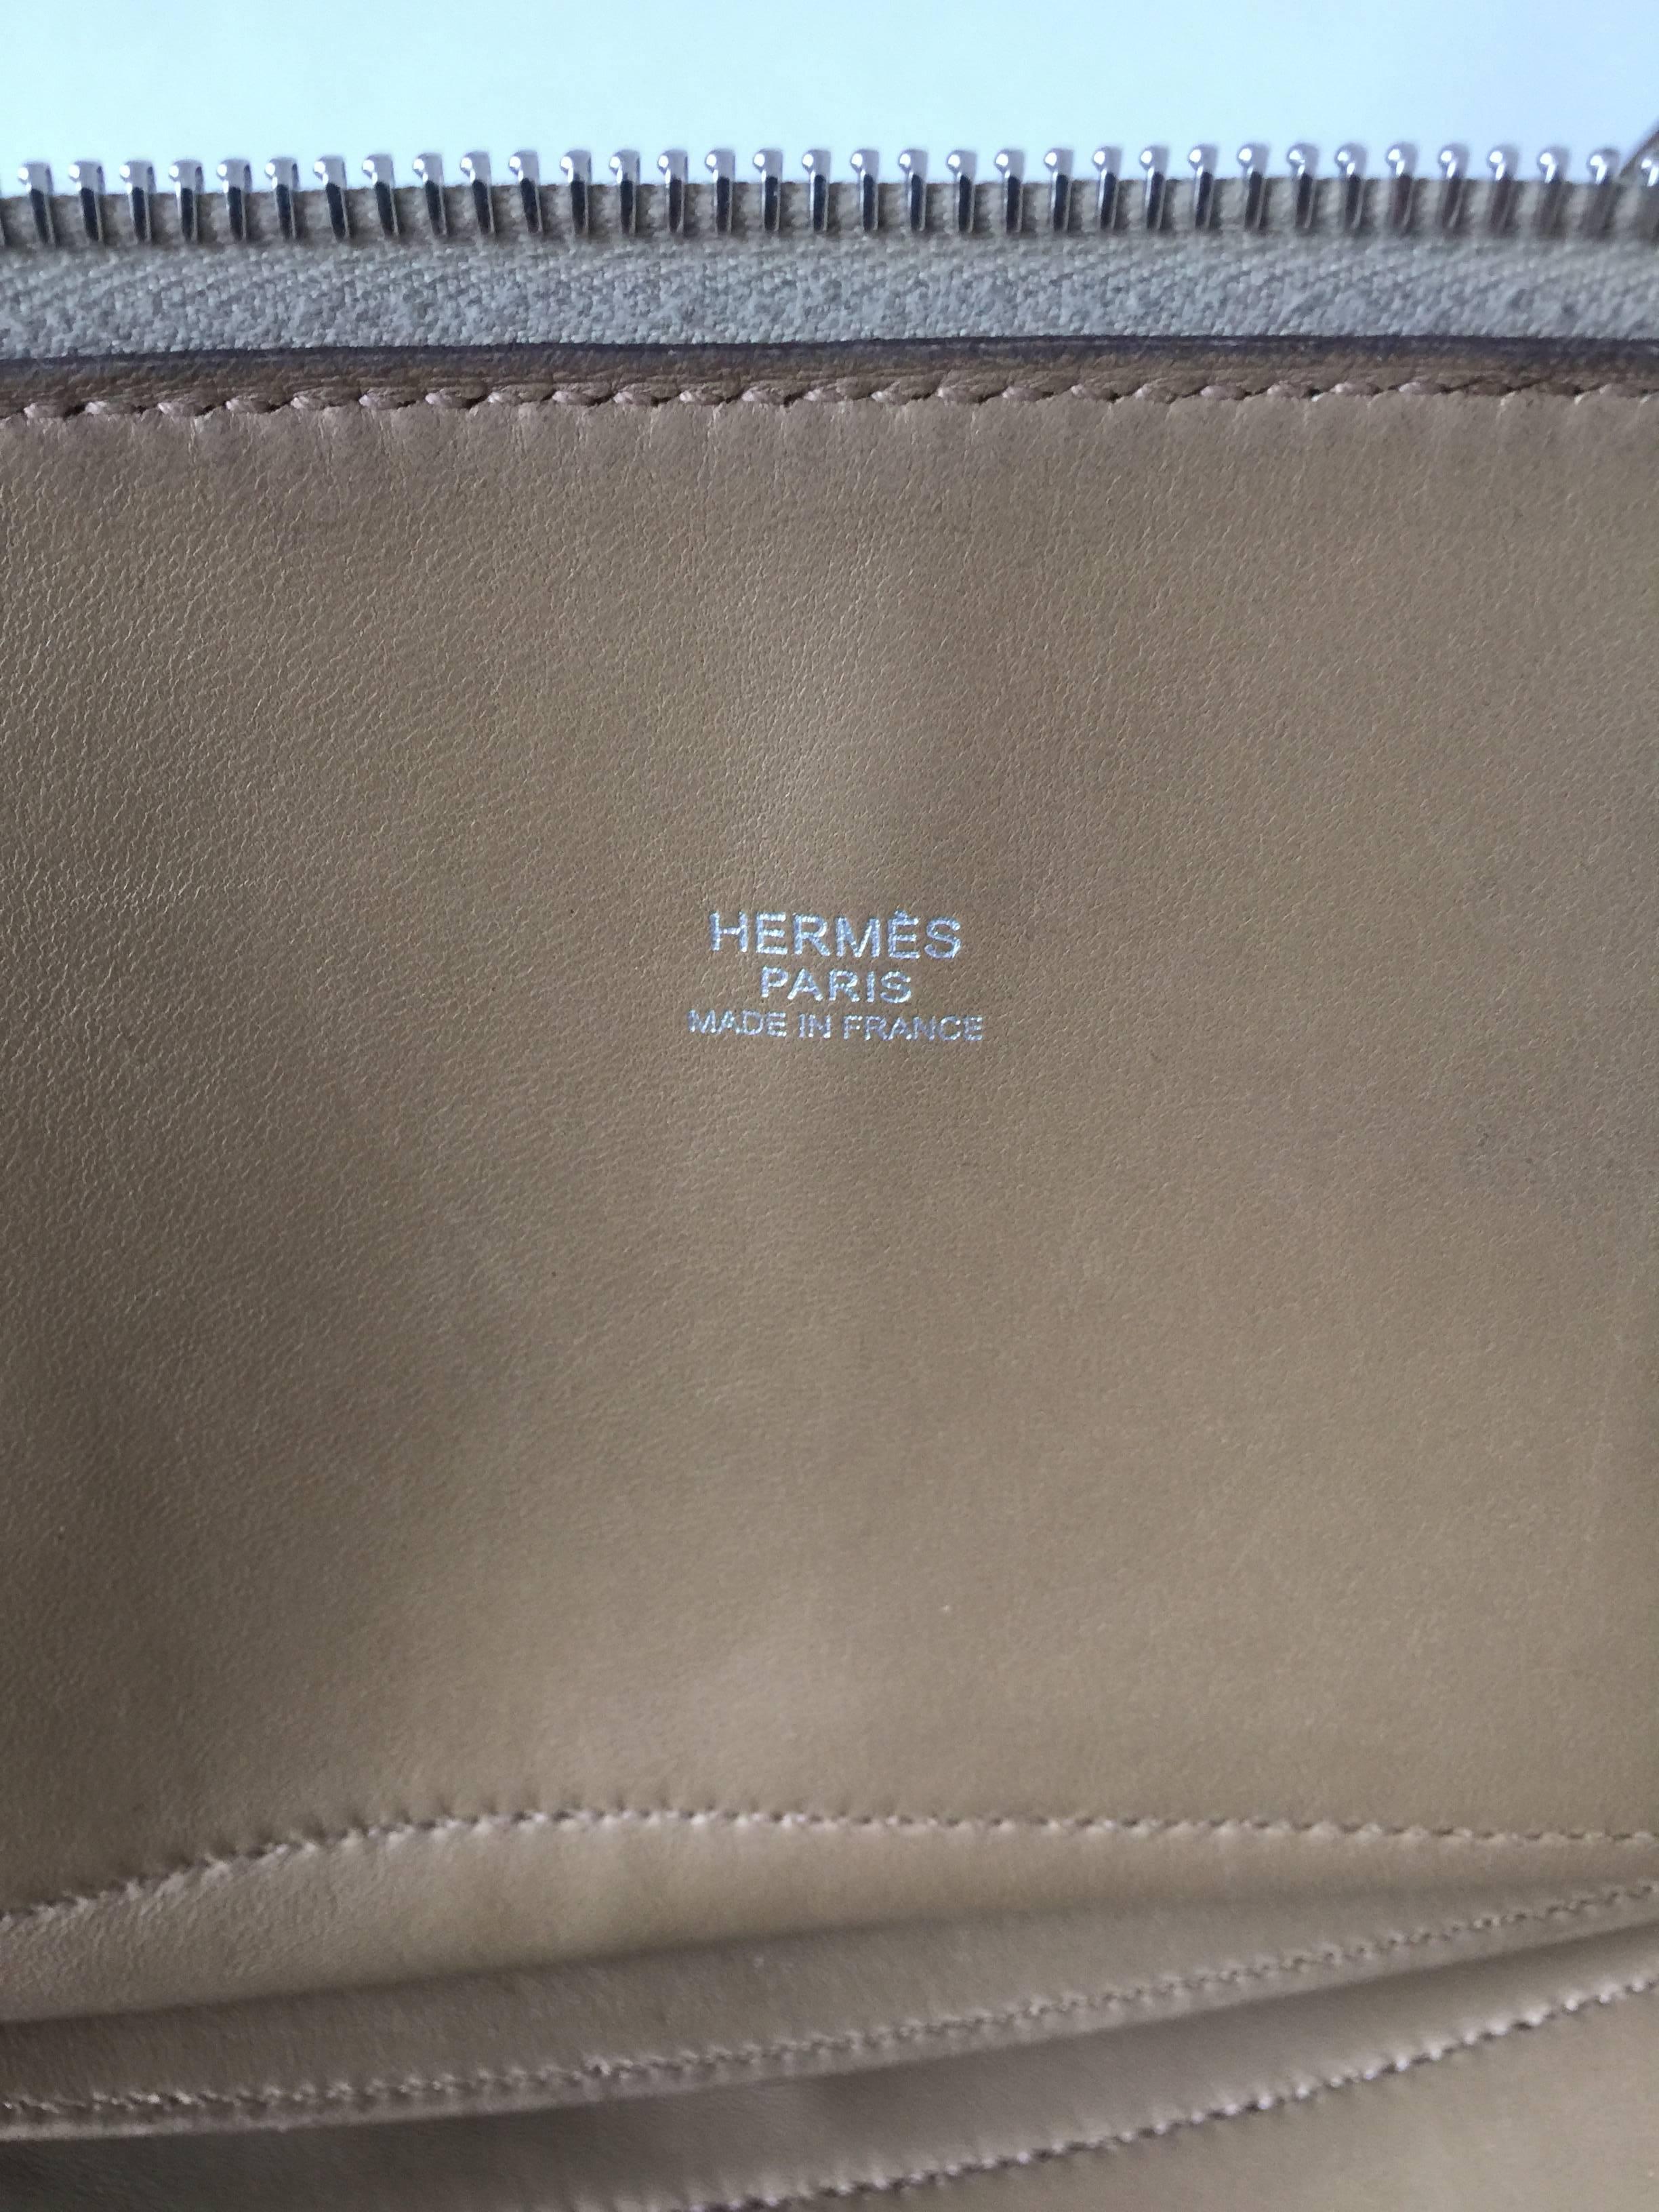 hermes iconic bag